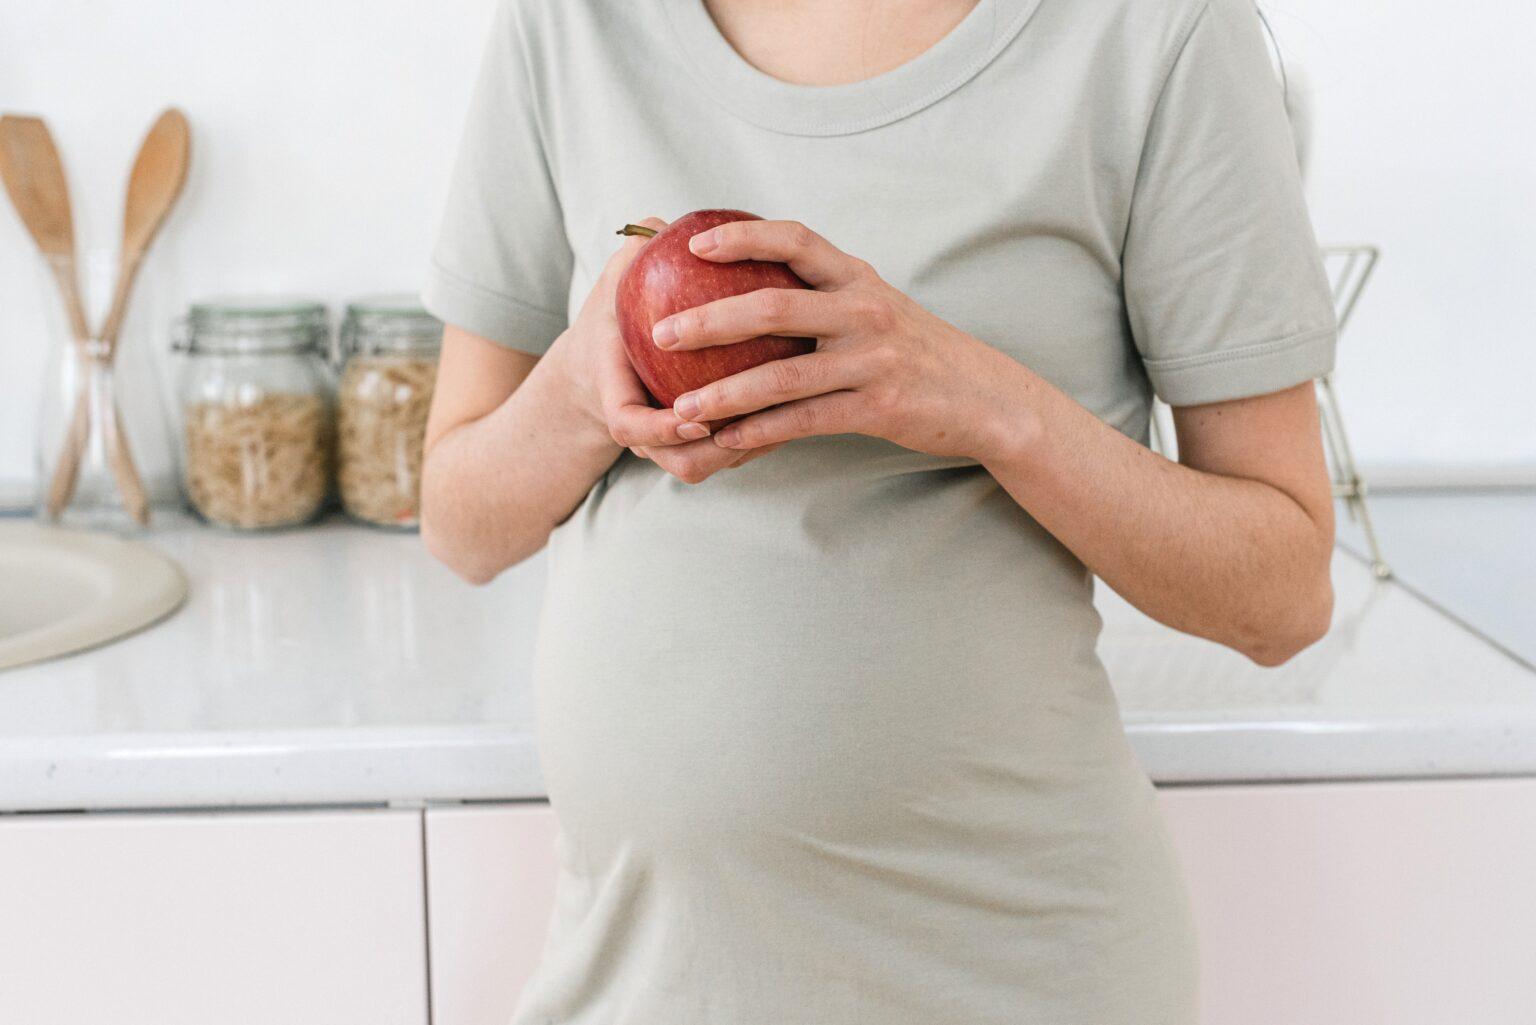 Nutrición durante el embarazo